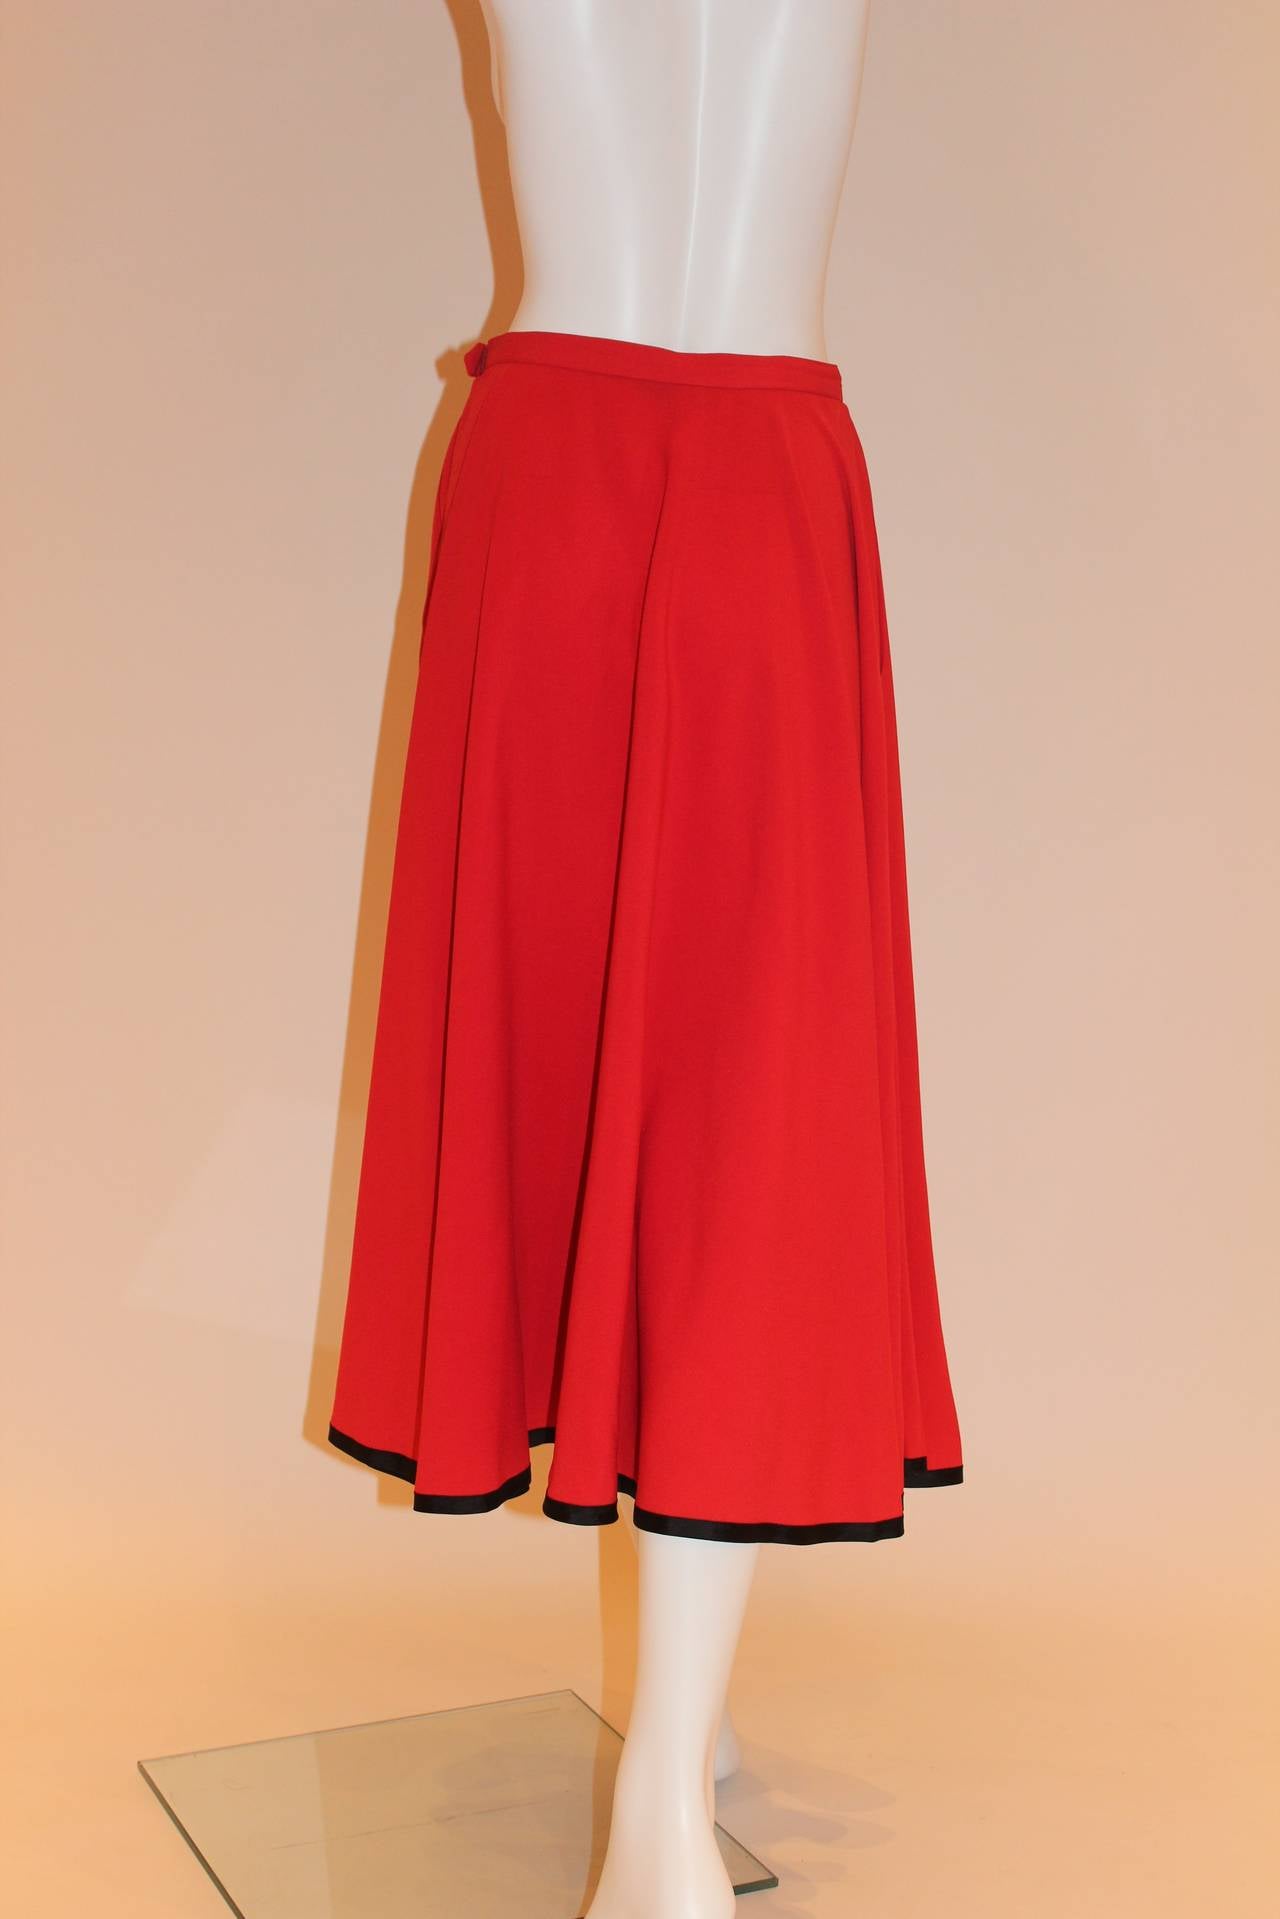 Yves Saint Laurent Rive Gauche Vintage Red Skirt 4